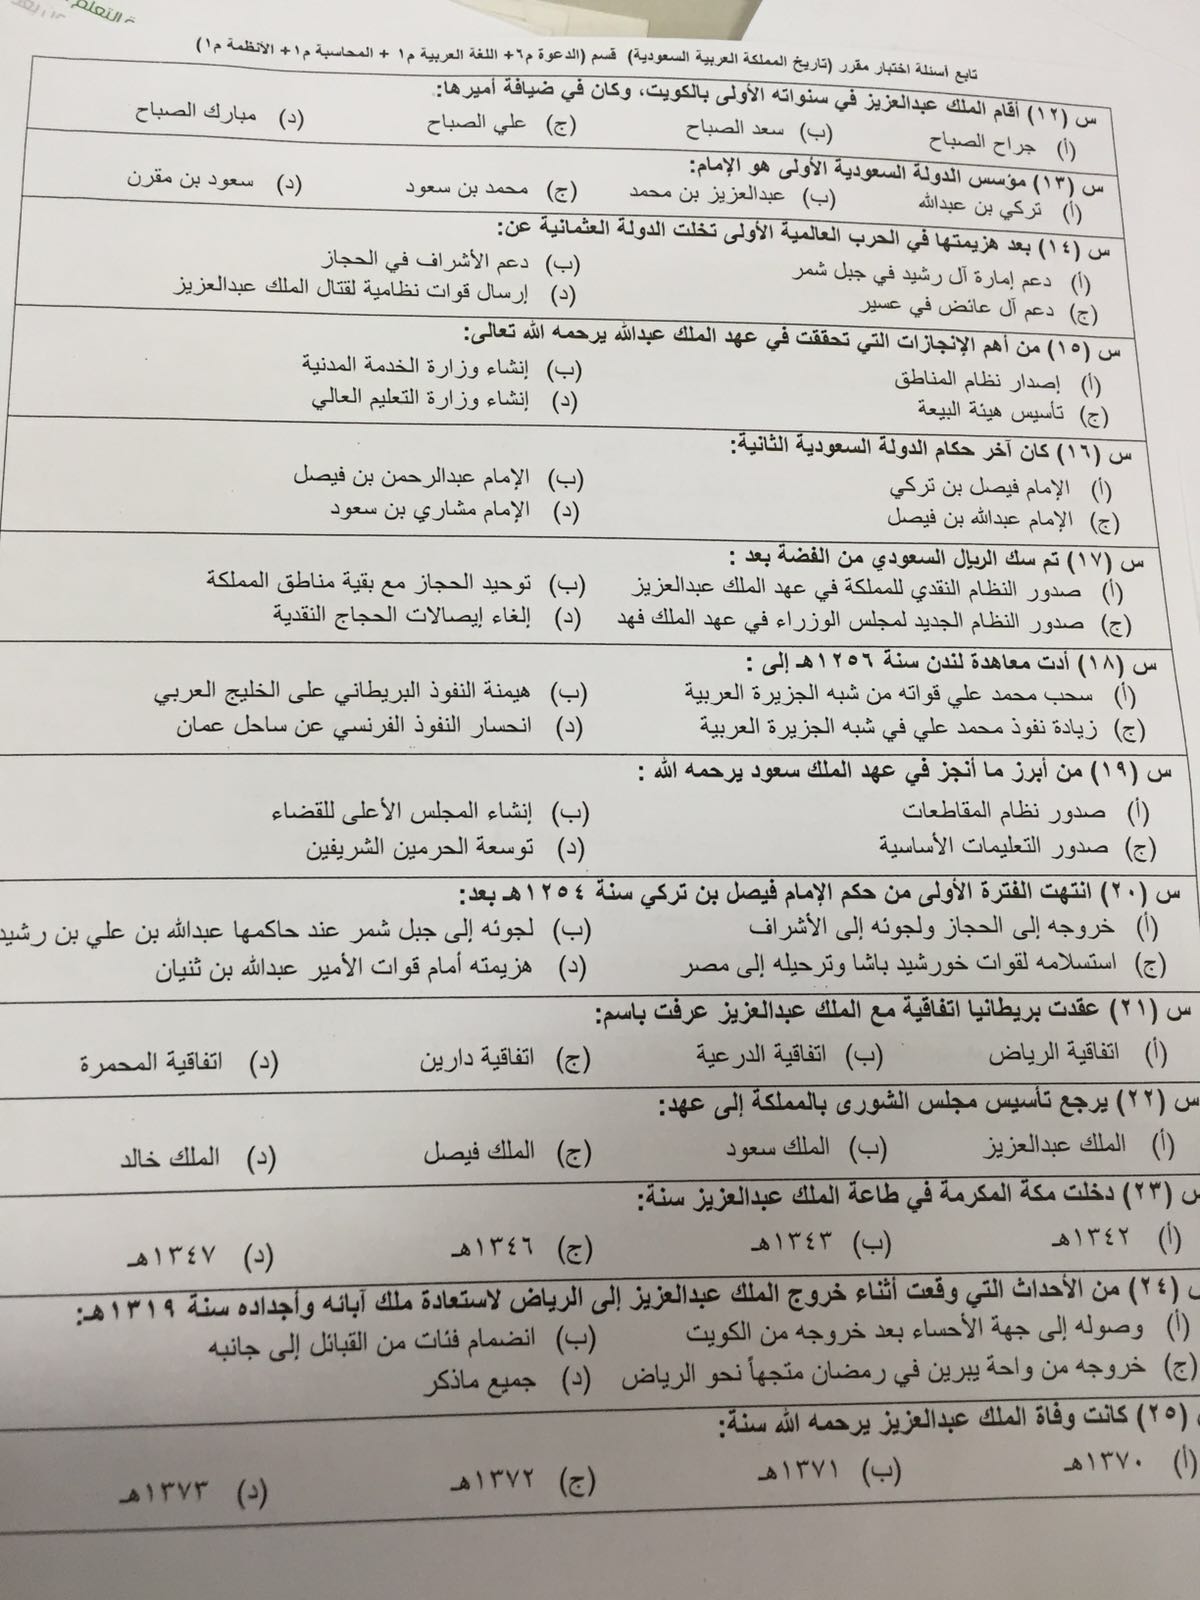 اختبار تاريخ المملكة العربية السعودية ترخ 102